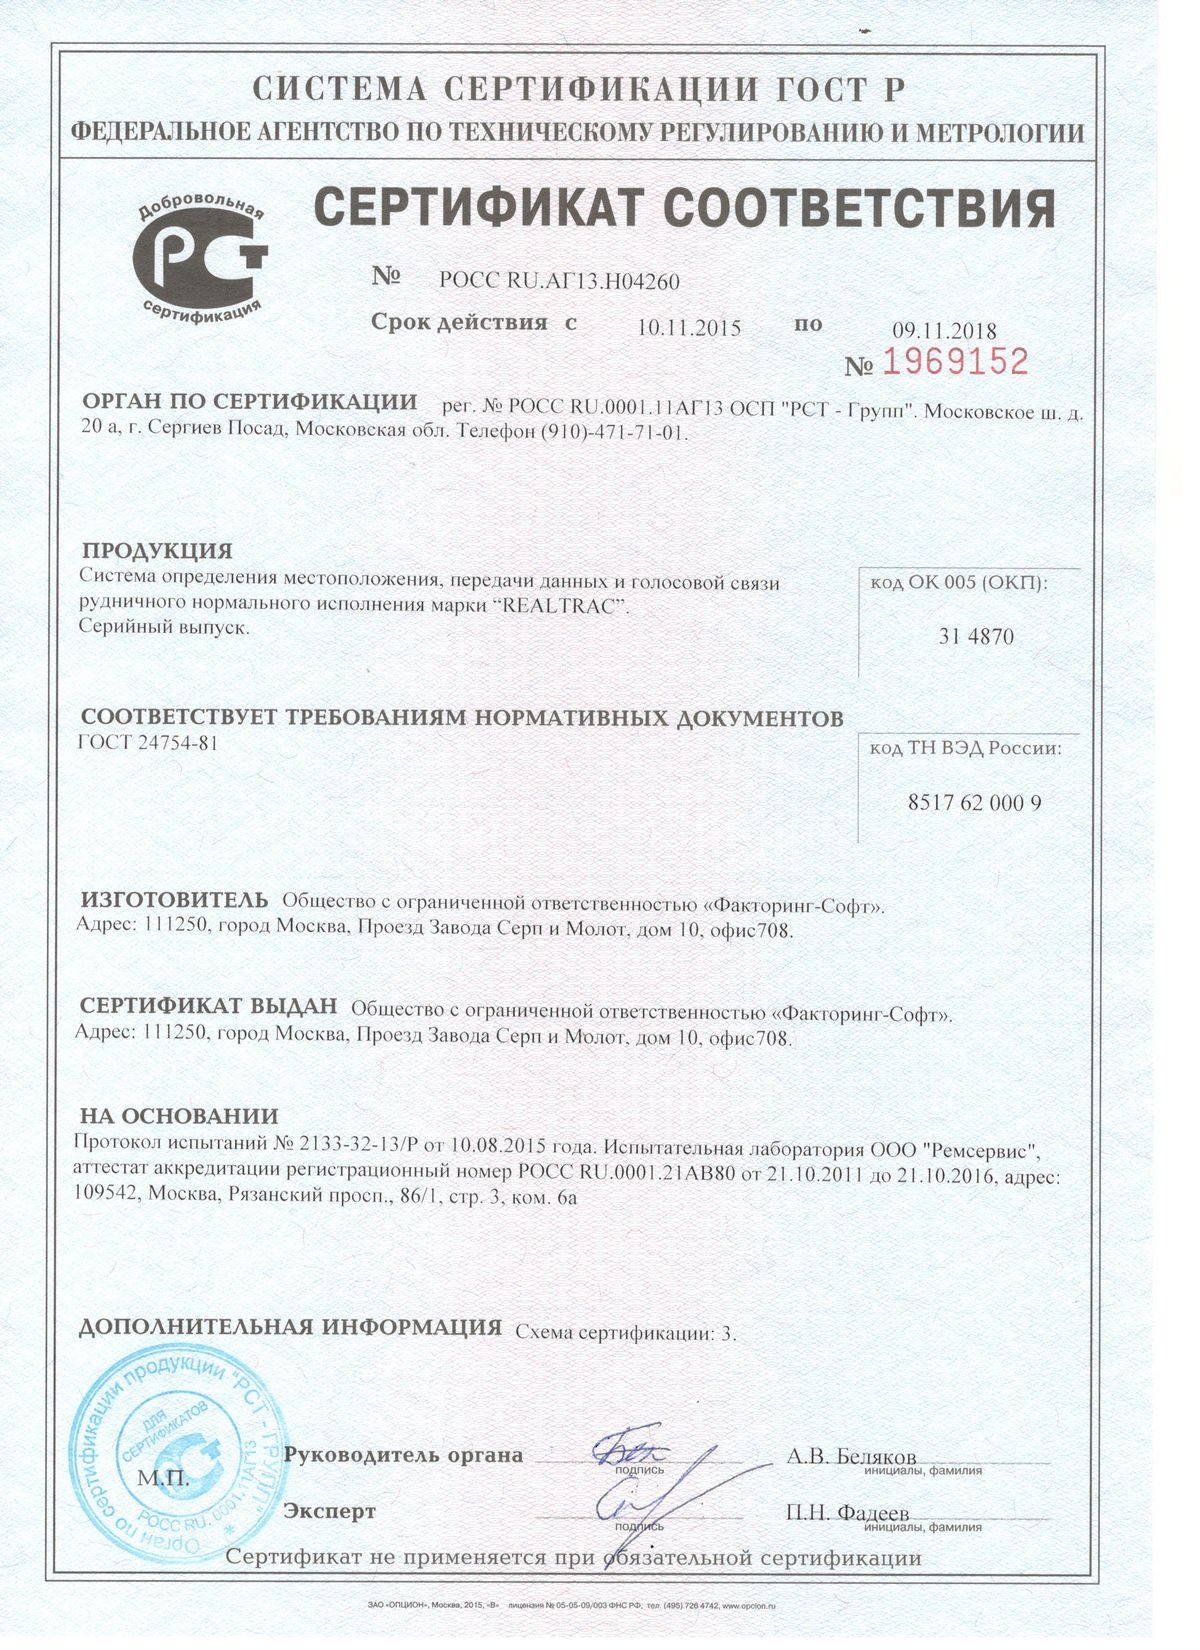 Сертификат соответствия системы локального позиционирования RealTrac ГОСТ 24754-81